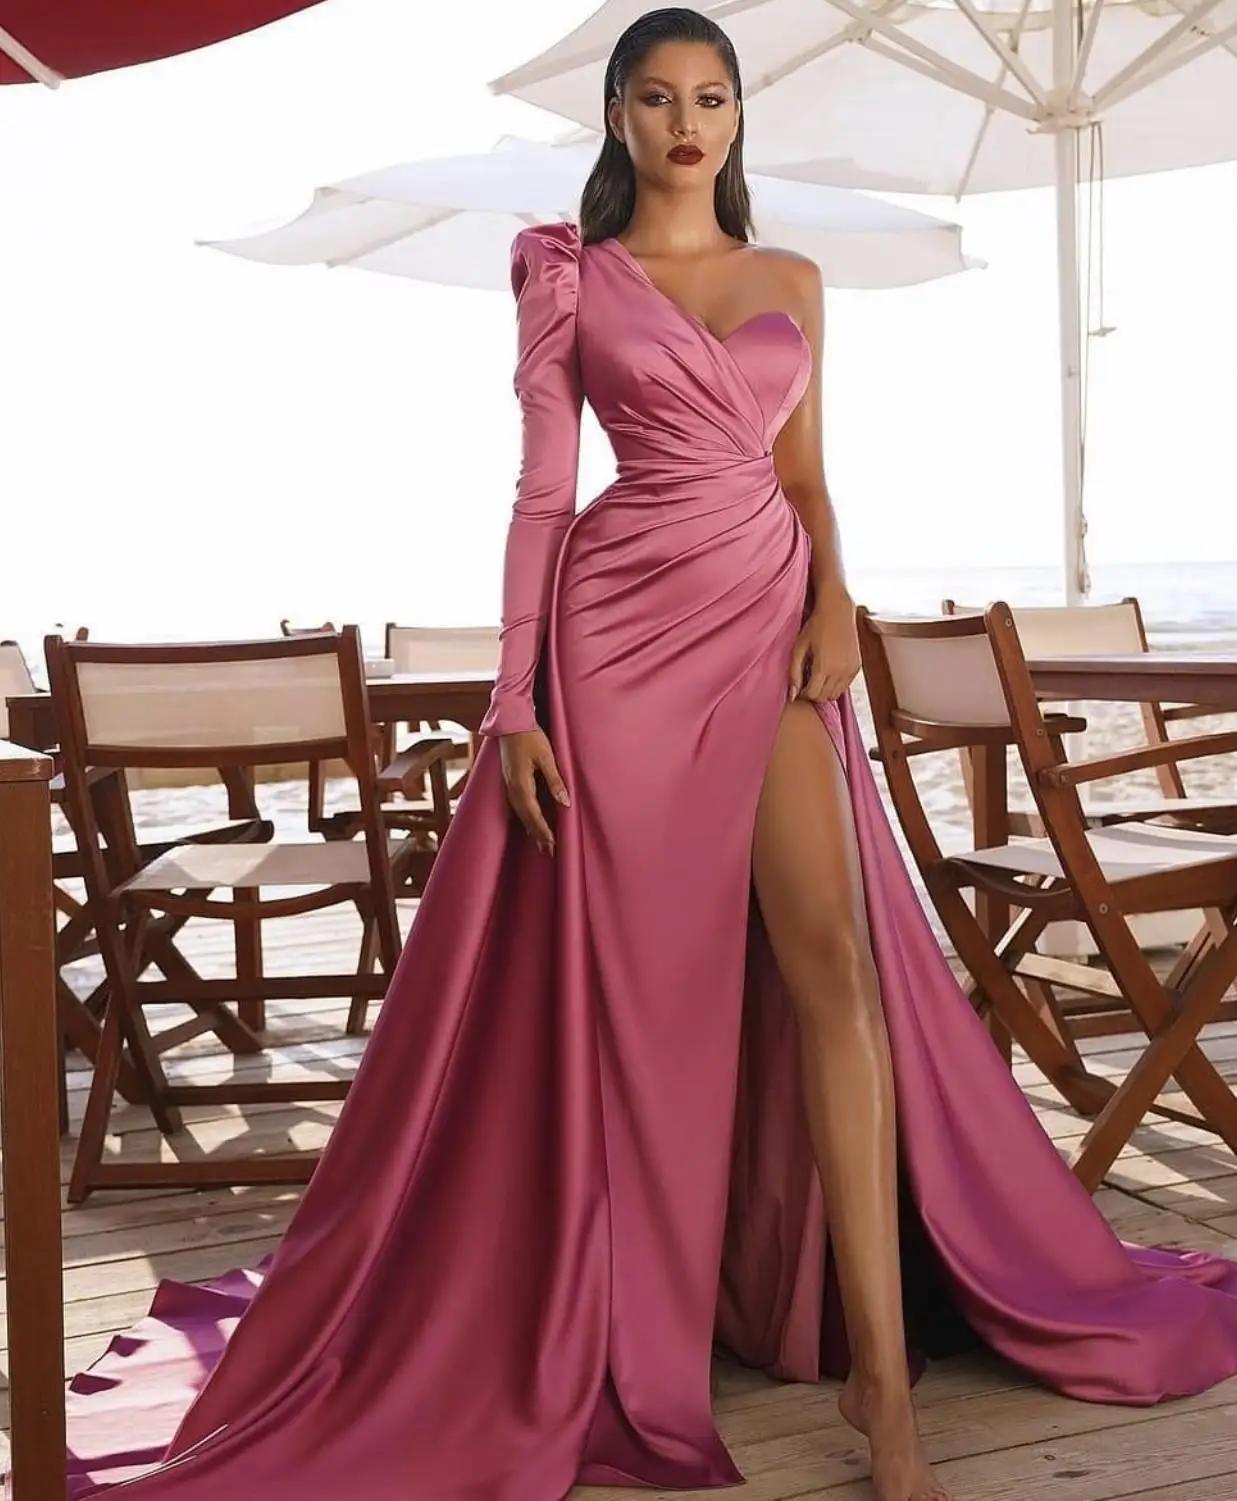 

2021 Newest Prom Dresses African Saudi Arabia Long Sleeves Women Formal Dress Mermaid High Split Celebrity Robe De Soireaid Gown